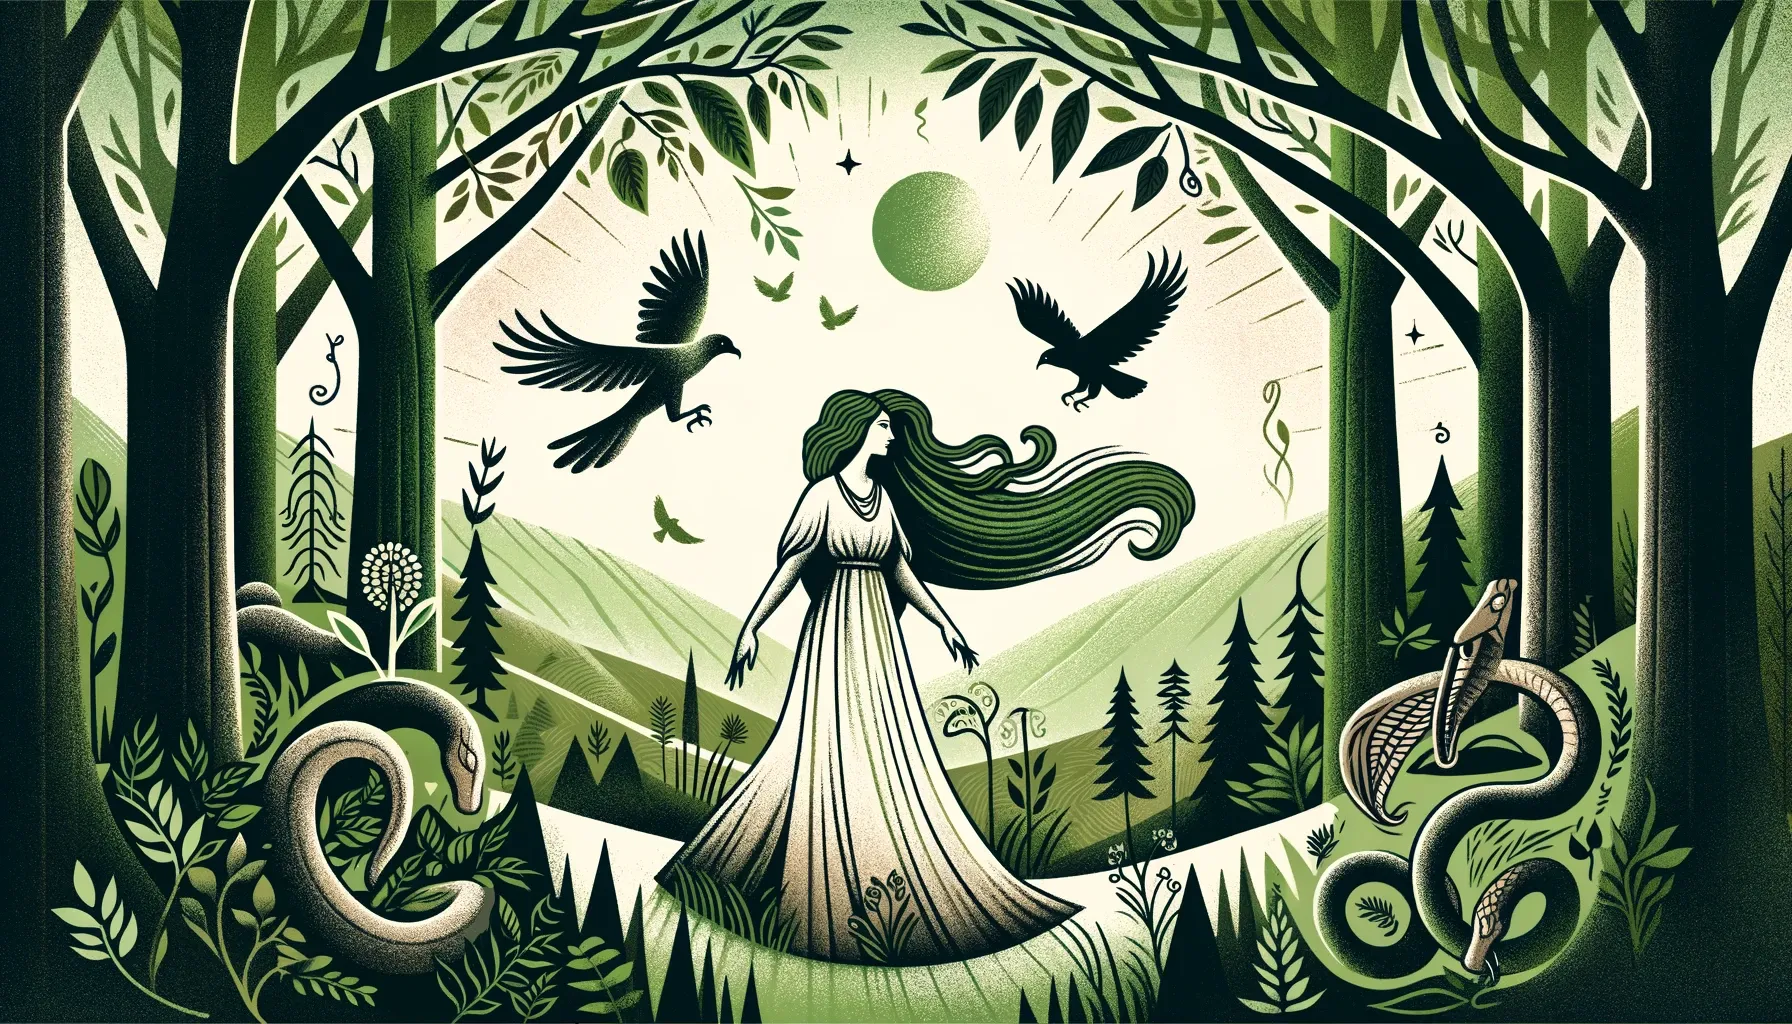 Mari, la diosa de la mitología vasca, en un bosque sereno, rodeada de vegetación exuberante, serpientes y cuervos, simbolizando su conexión con la naturaleza y sus poderes místicos.